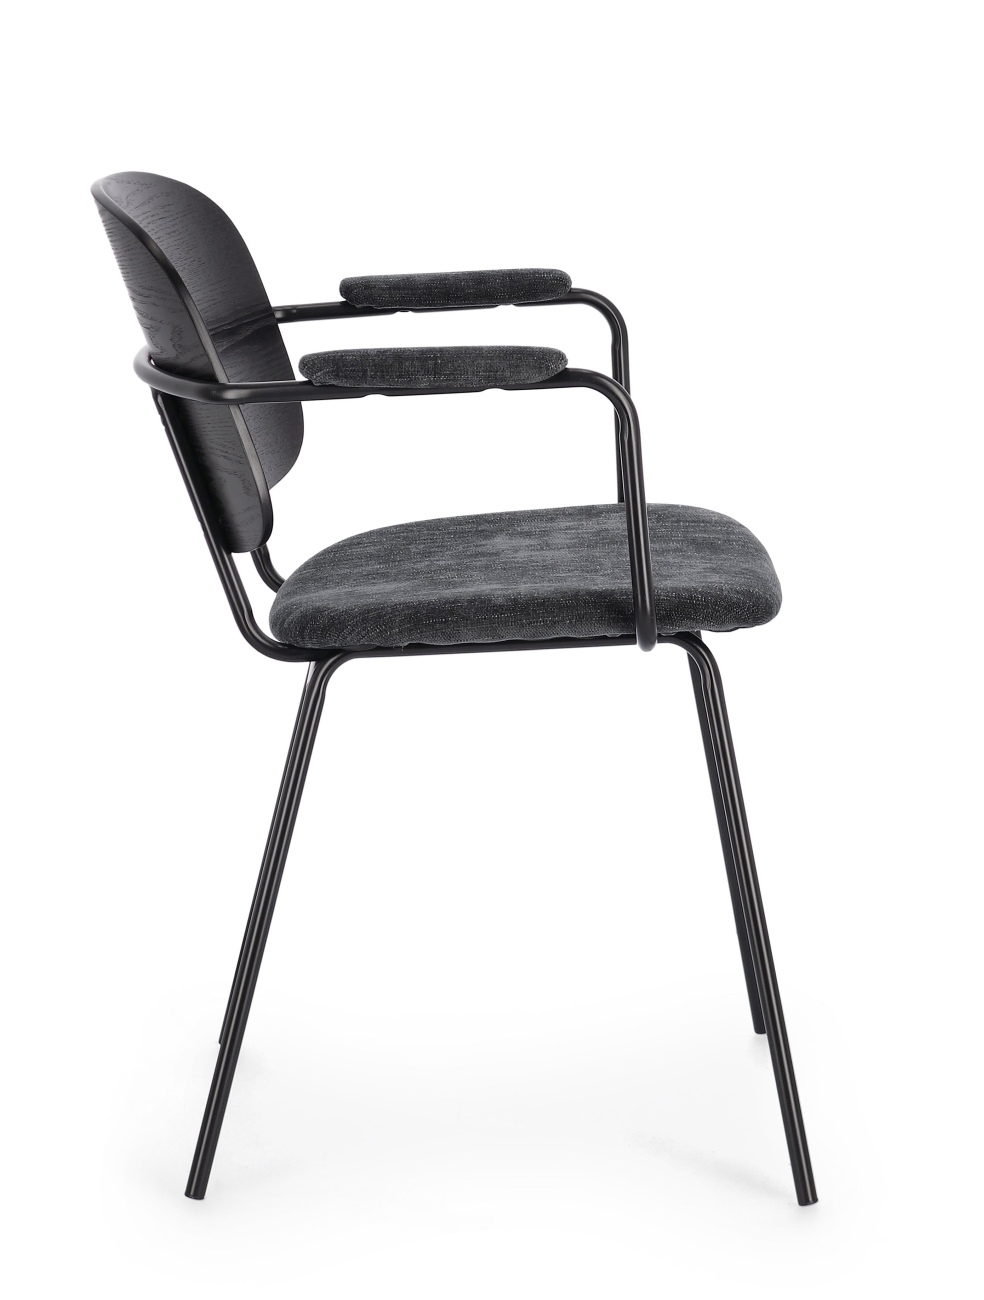 Der Esszimmerstuhl Sienna überzeugt mit seinem modernen Stil. Gefertigt wurde er aus Stoff, welcher einen dunkelgrauen Farbton besitzt. Das Gestell ist aus Metall und hat eine schwarze Farbe. Der Stuhl besitzt eine Sitzhöhe von 48 cm.